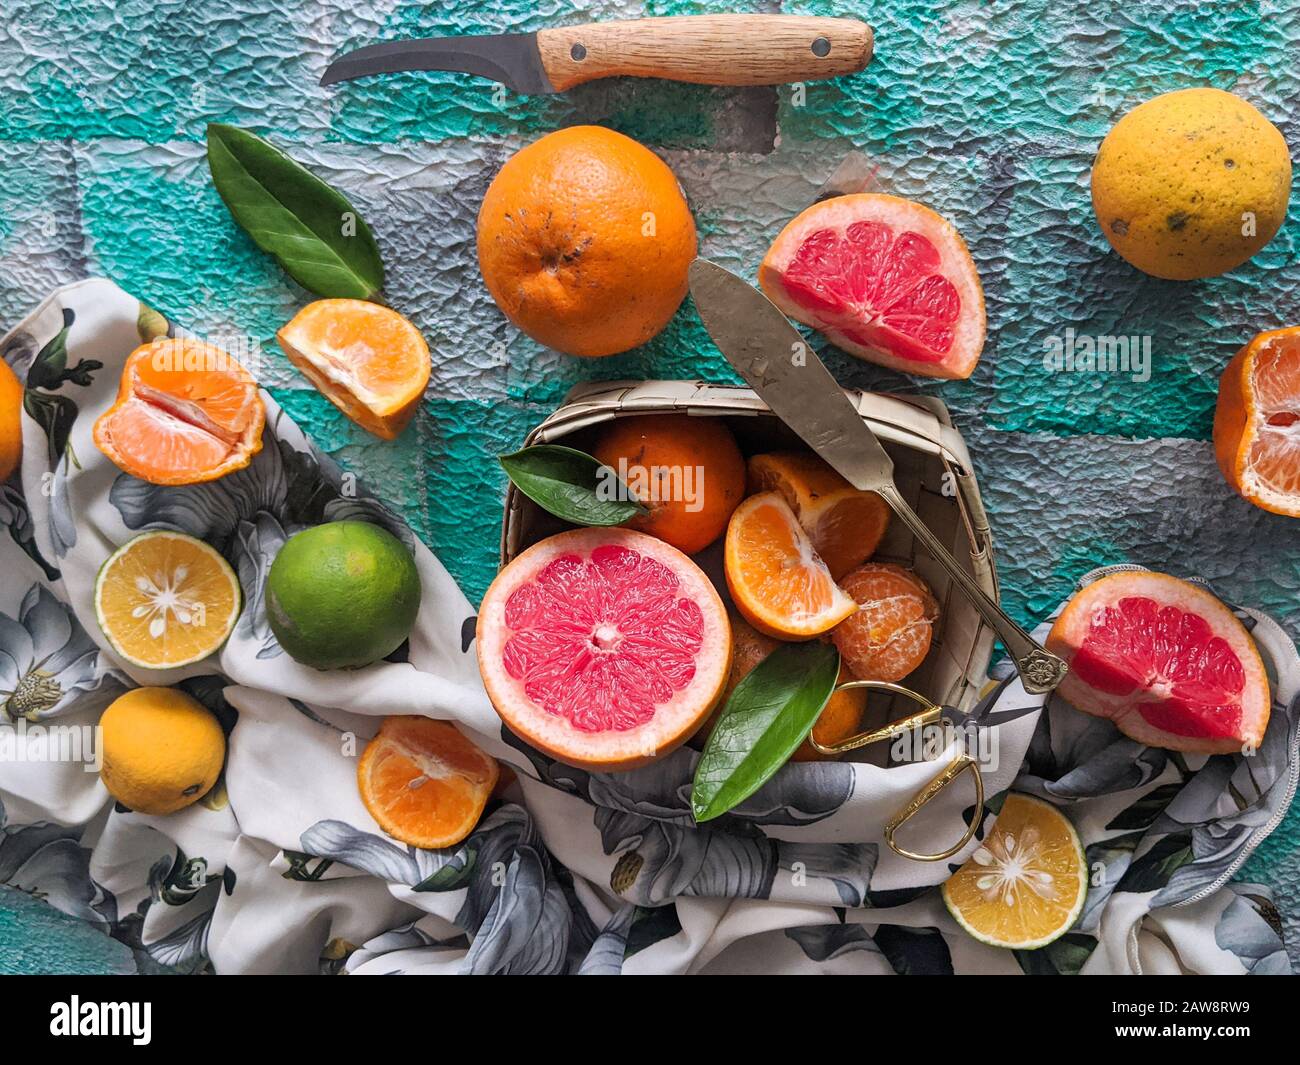 Assortimento di agrumi, a fette, con un coltello su fondo blu. Frutti tropicali misti, lime, limone, arancia, estate, fresco, biologico, fattoria, caffè Foto Stock